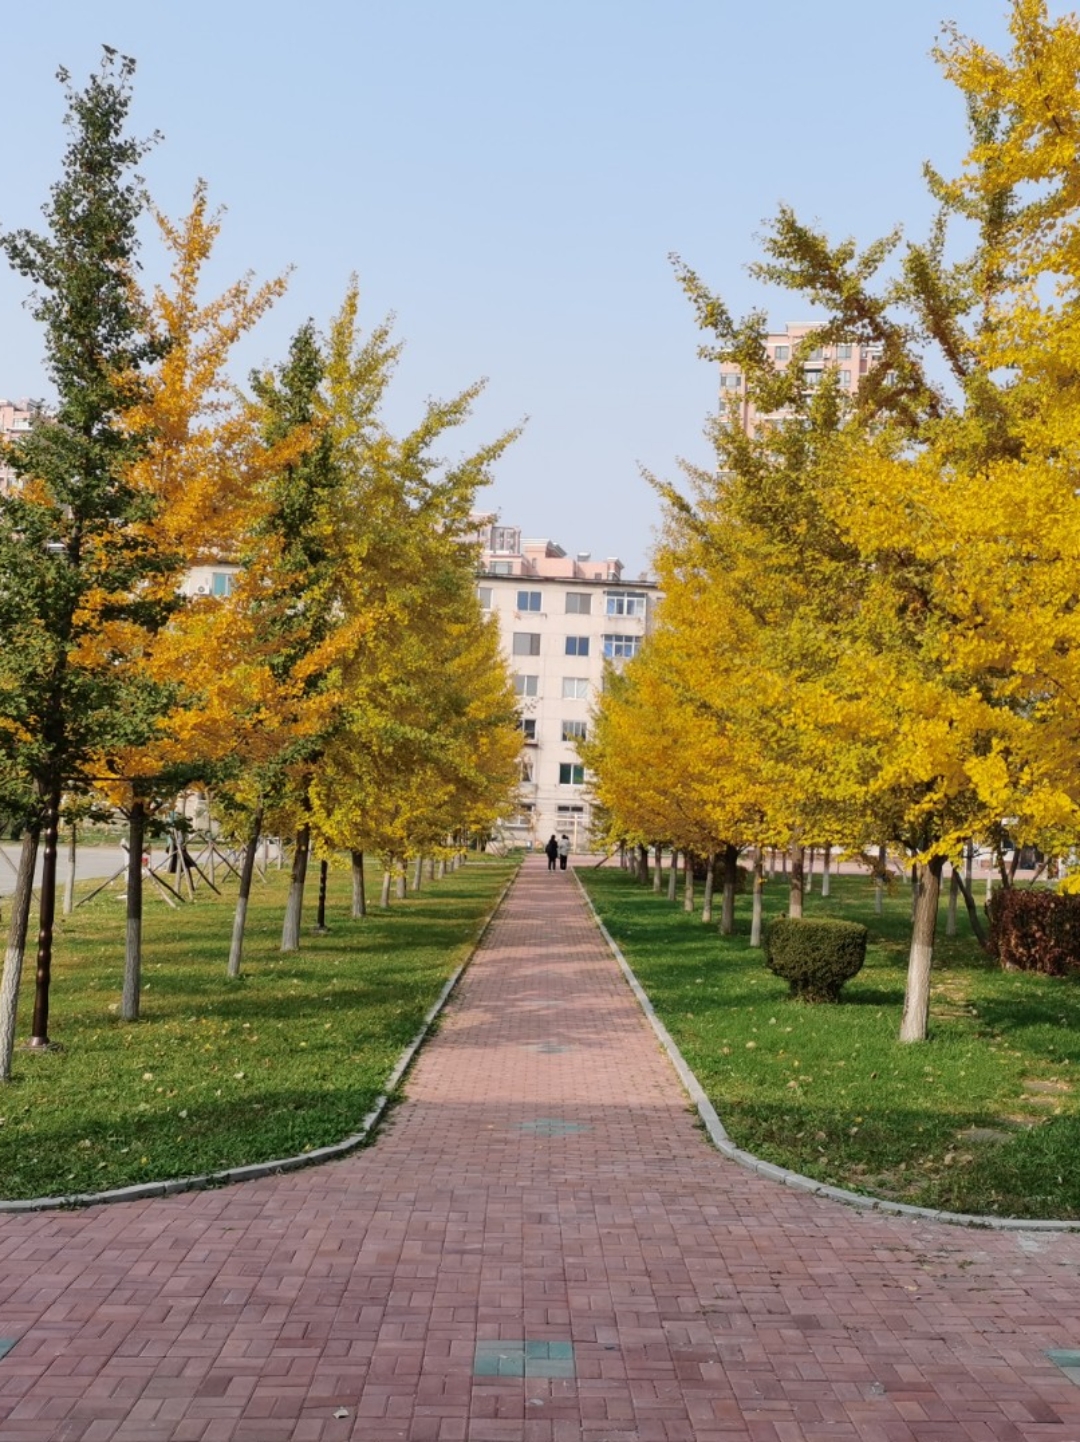 辽宁大学武圣校区校园环境大揭秘  学校的绿化做得很好,主楼前的一块